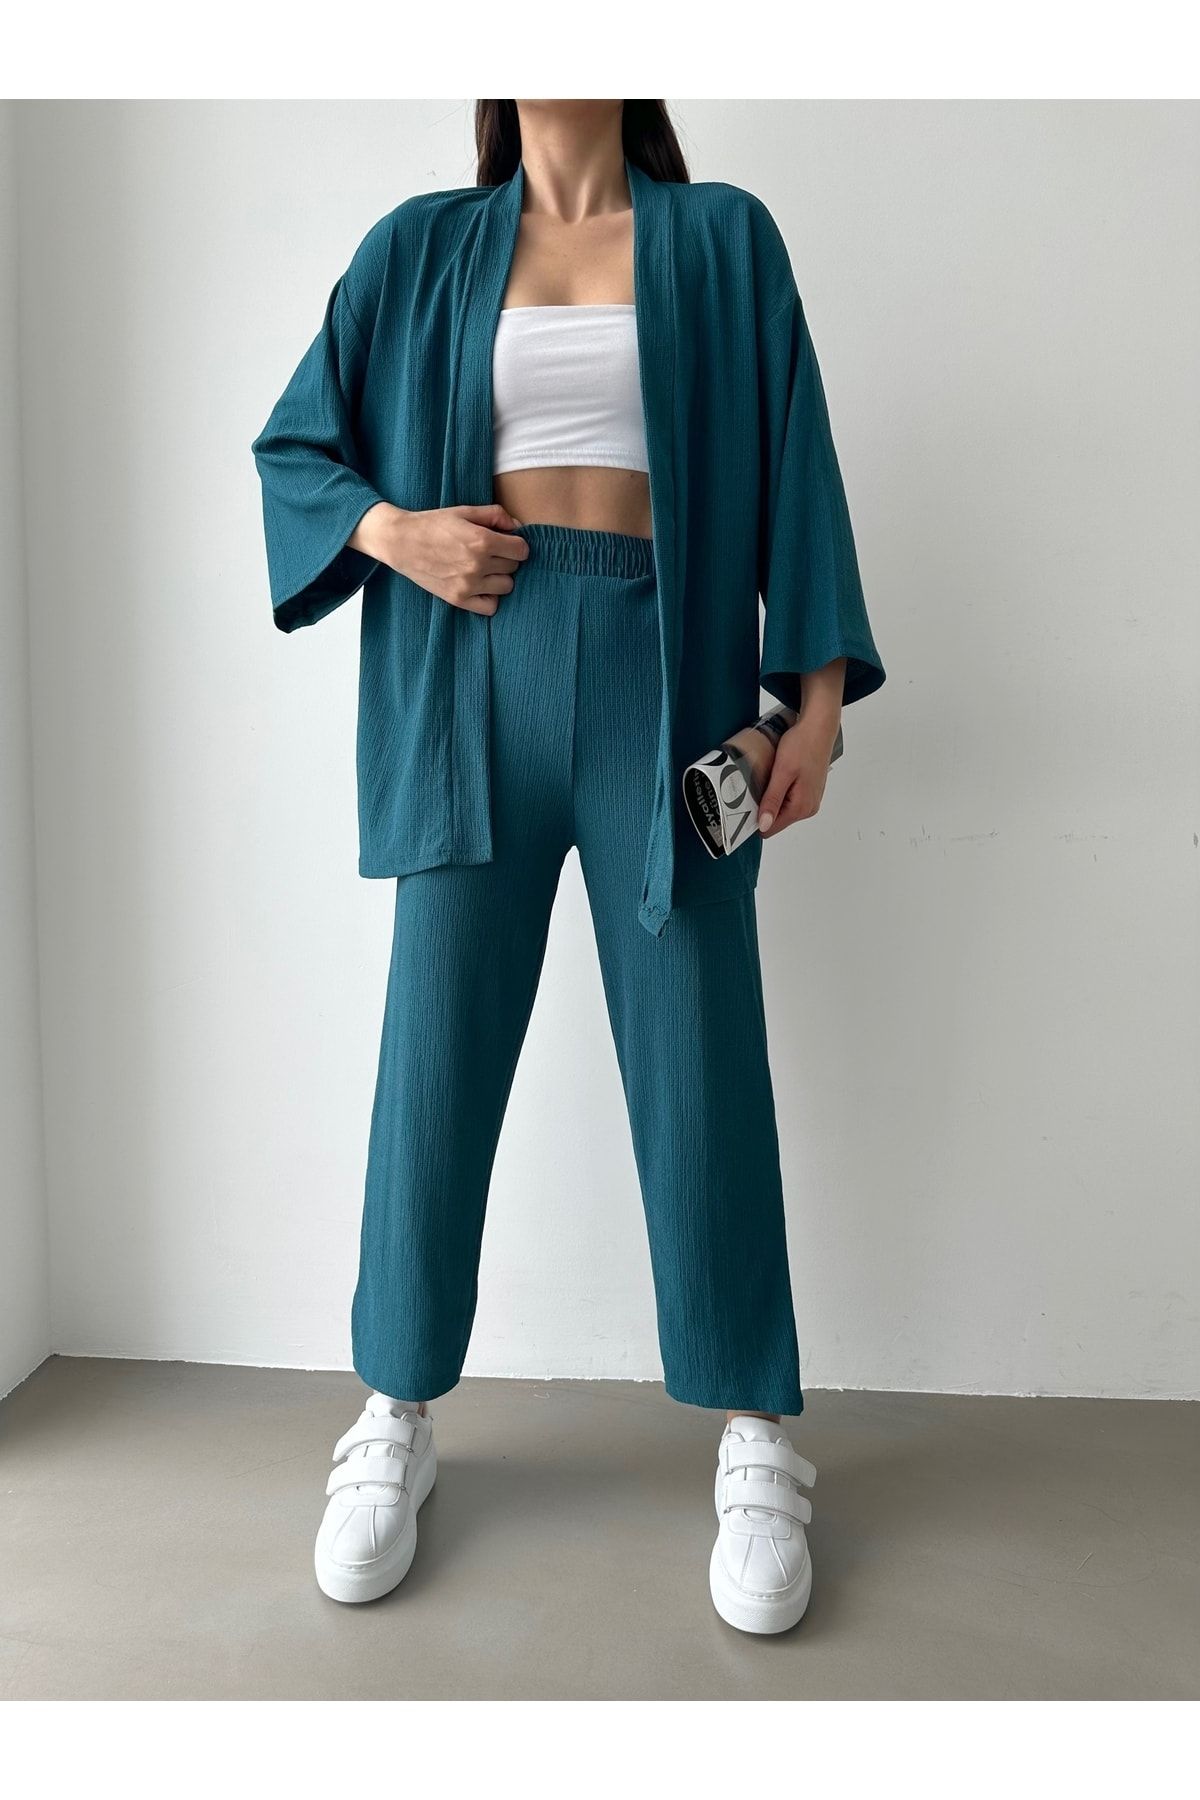 BEJNA Kadın Petrol Yeşili Kimono Pantolon Örme Takımı